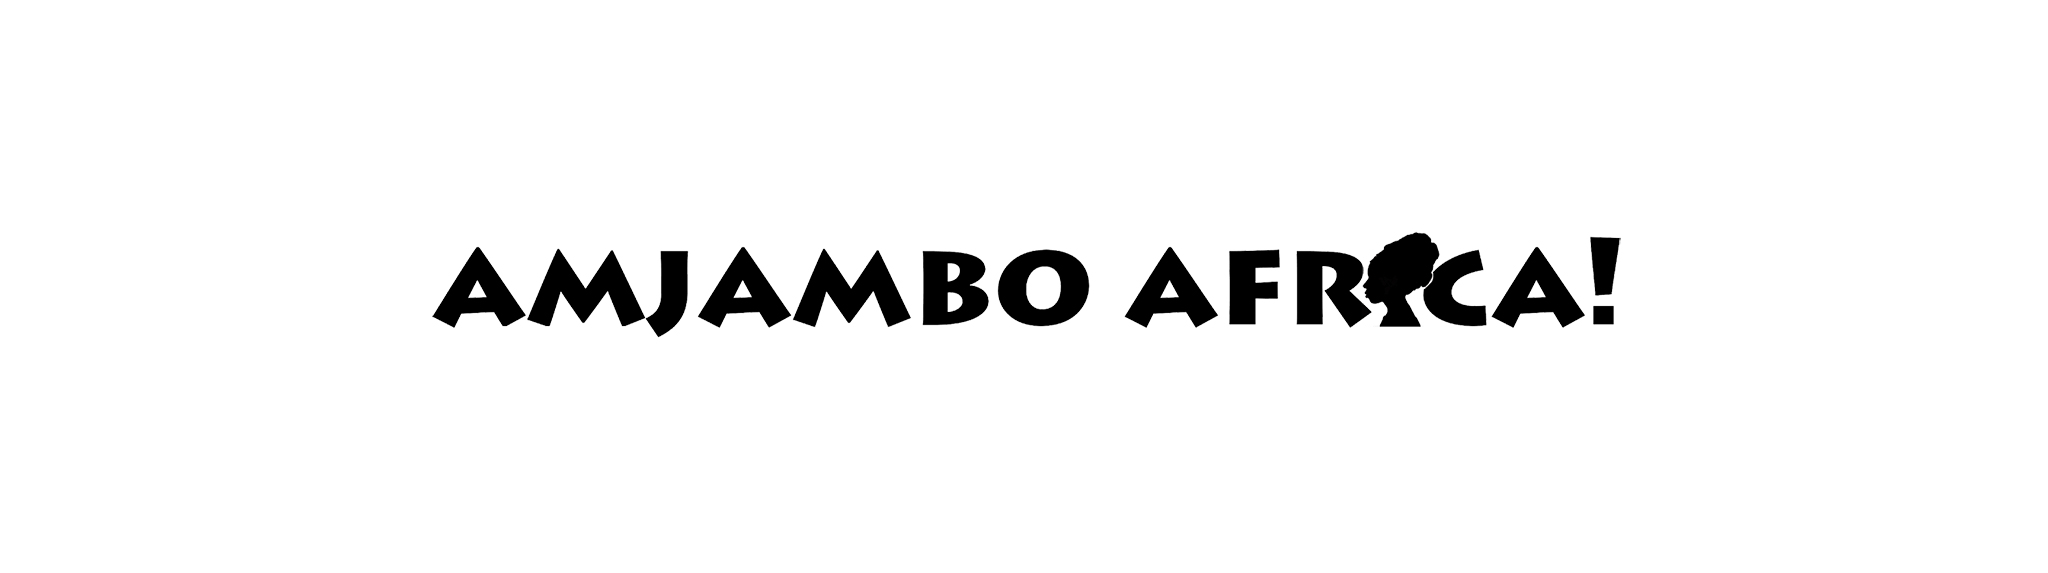 Amjambo Africa logo